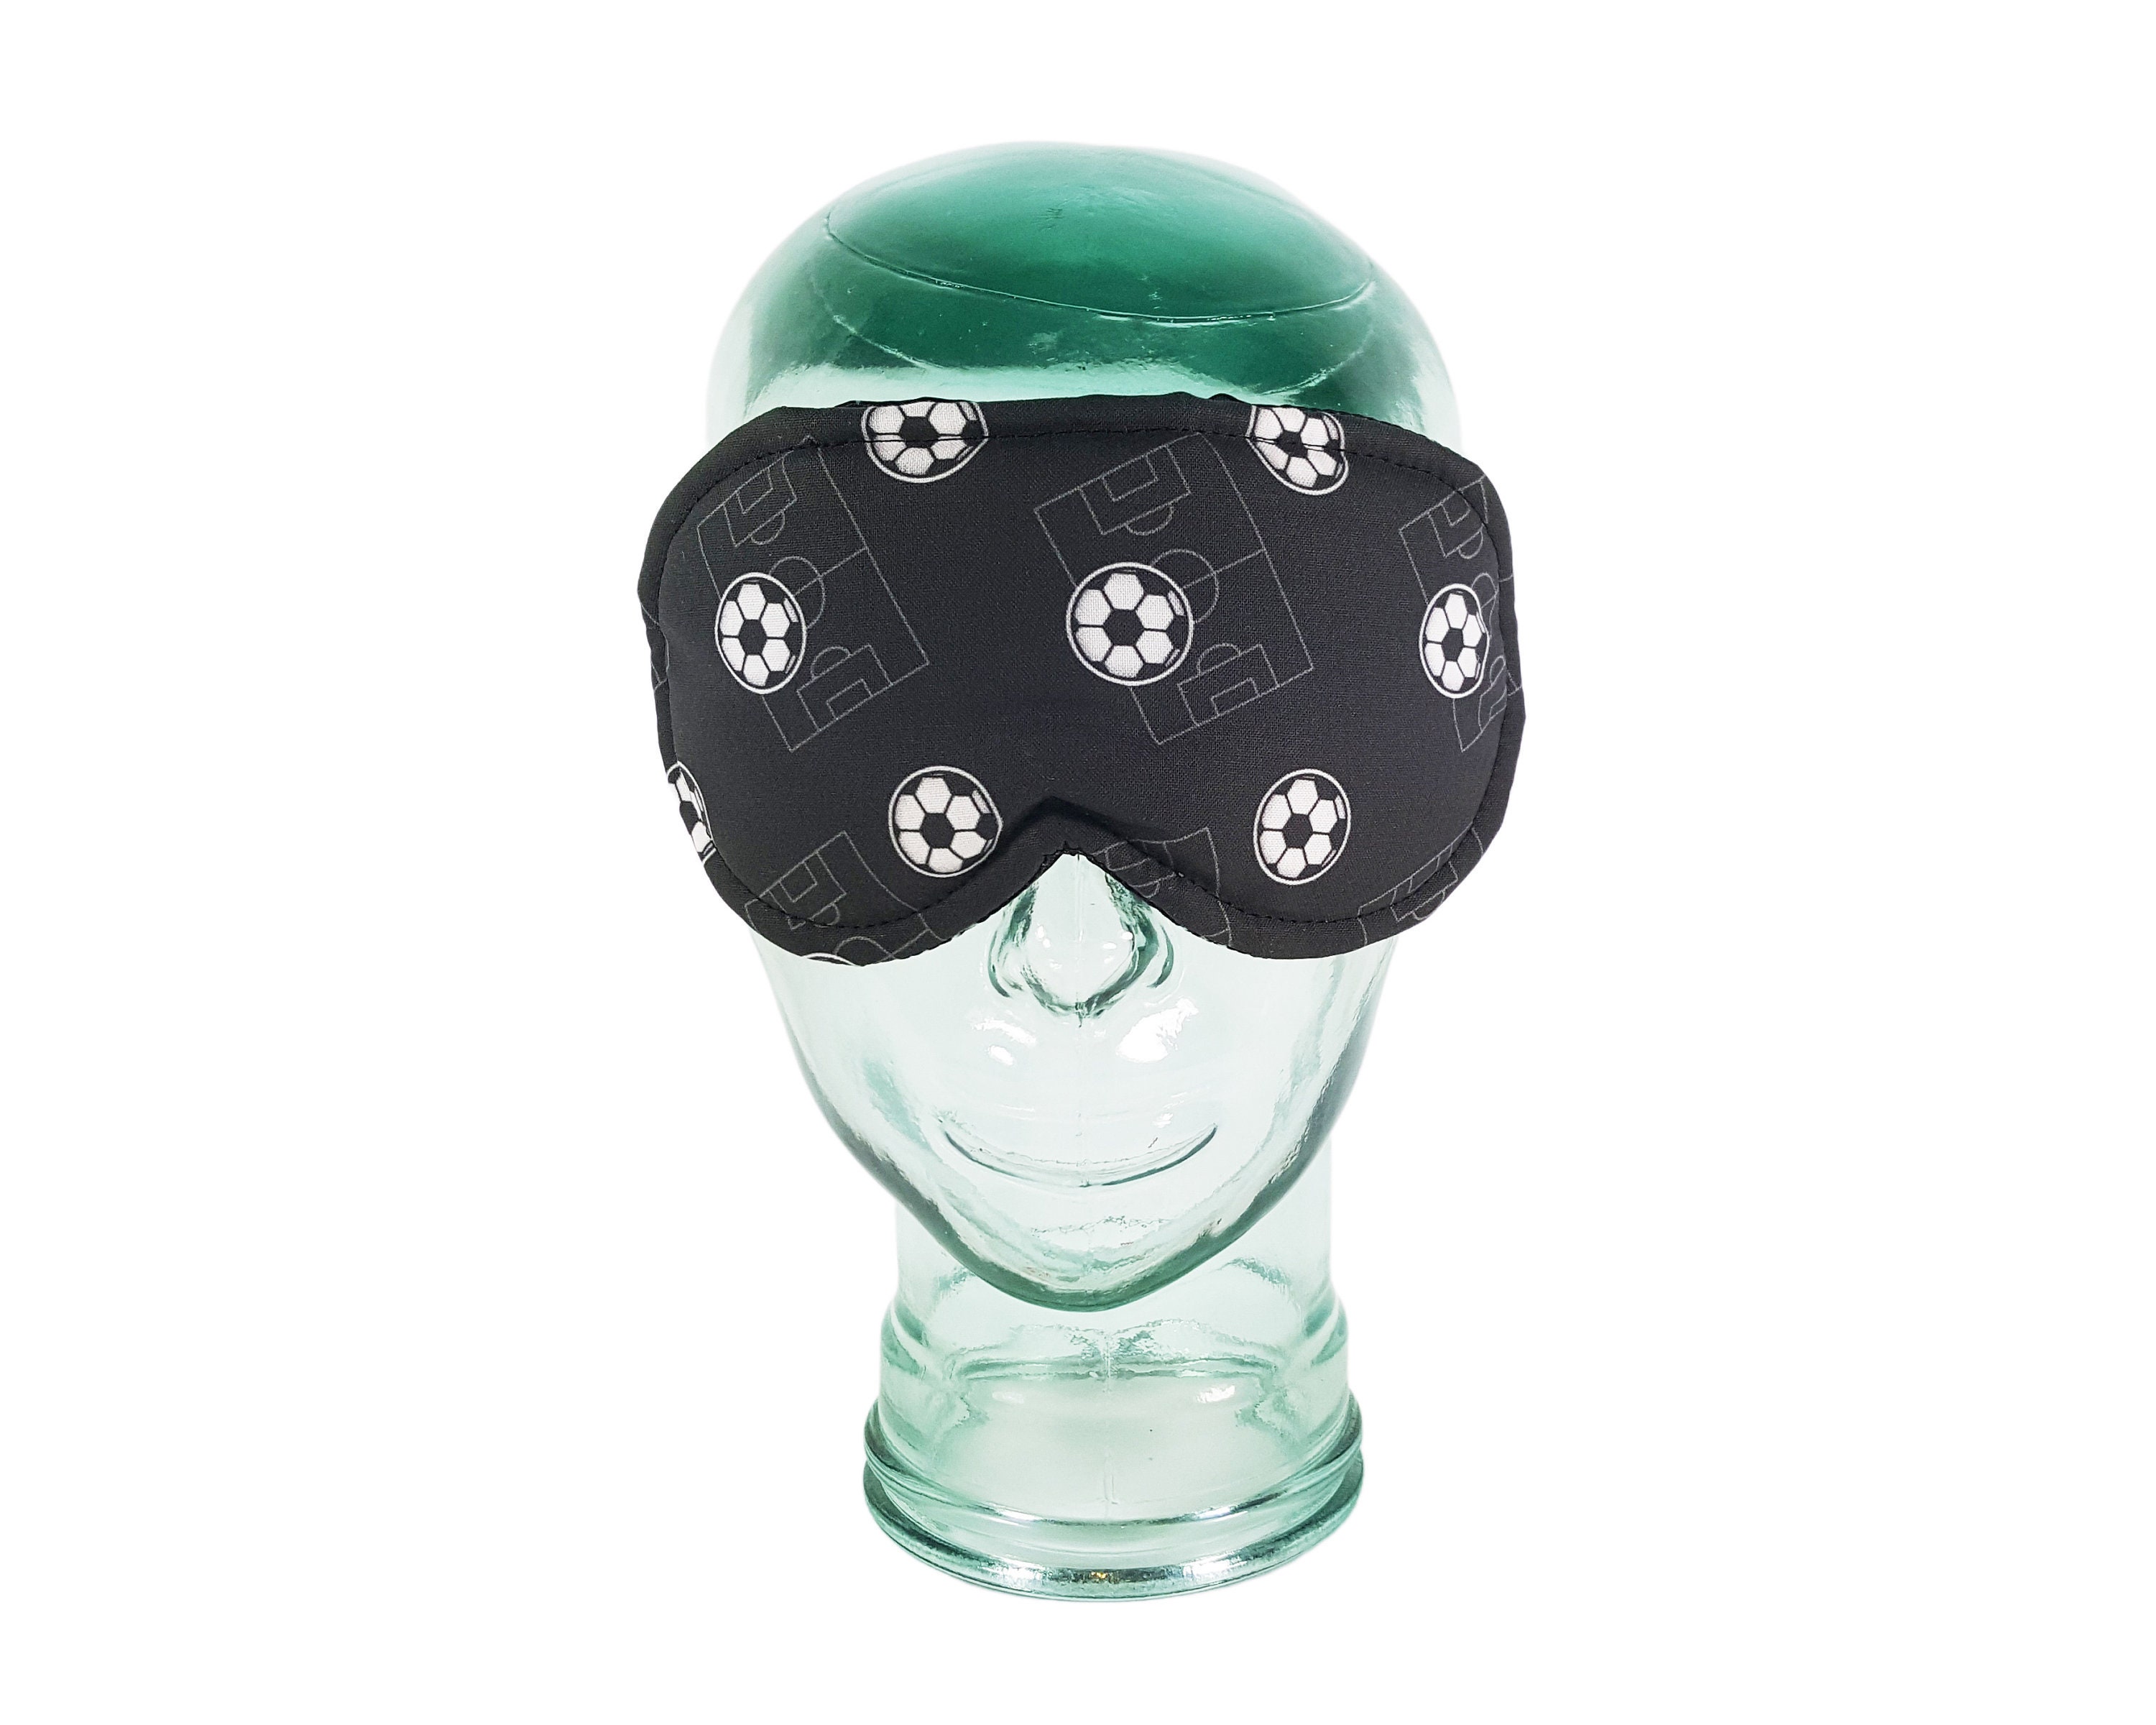 30 BLINDFOLDS blindfold for team building teambuilding eyemasks sleepmasks 